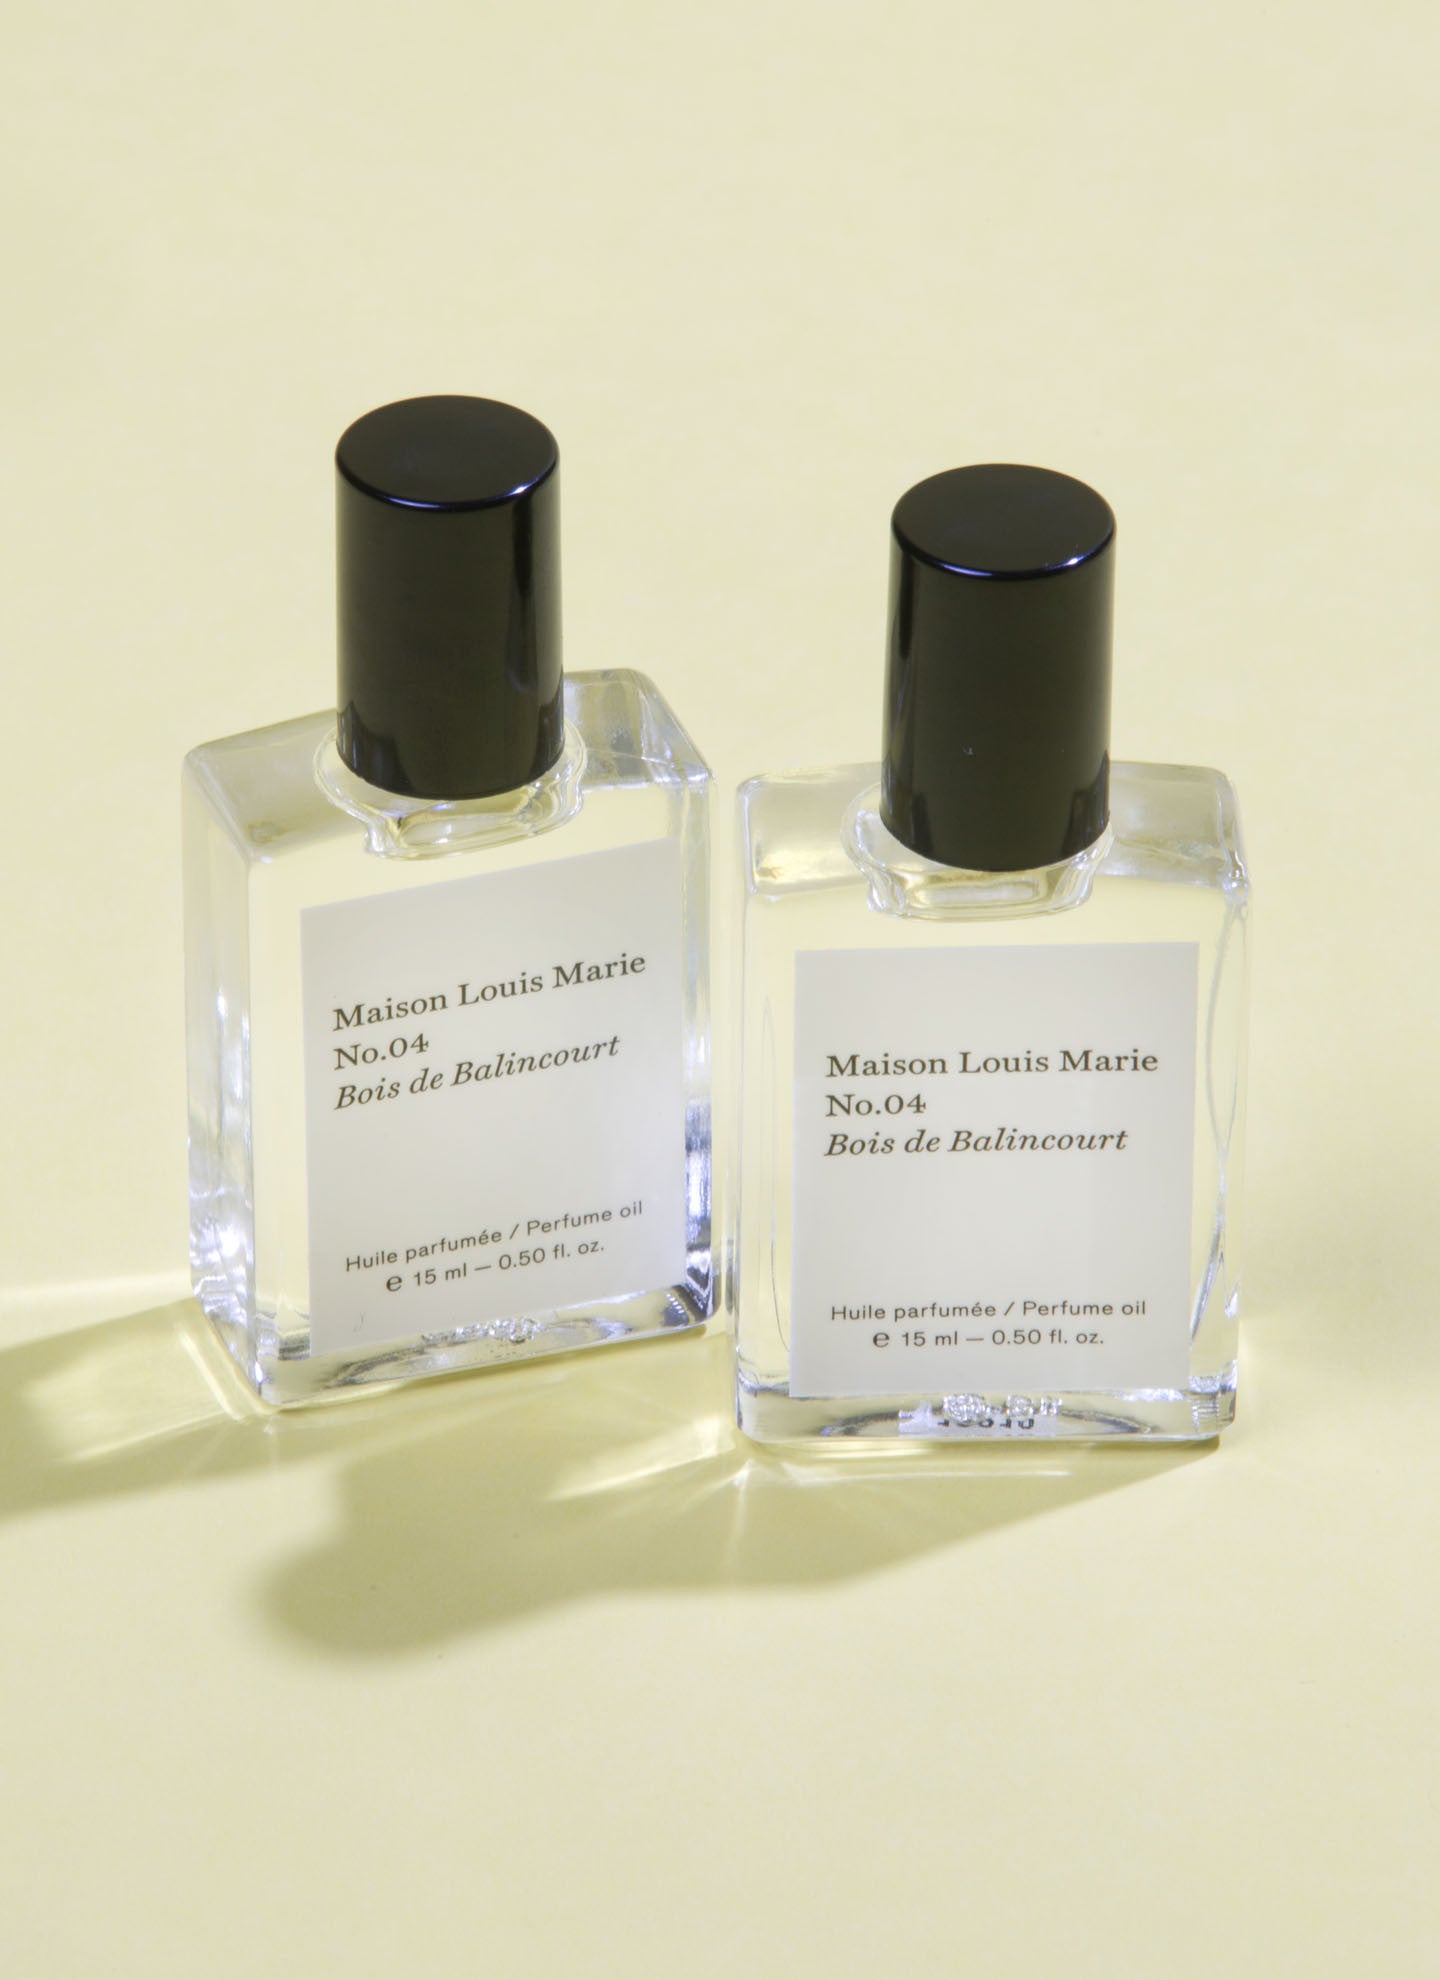 Maison Louis Marie Perfume Oil Scent